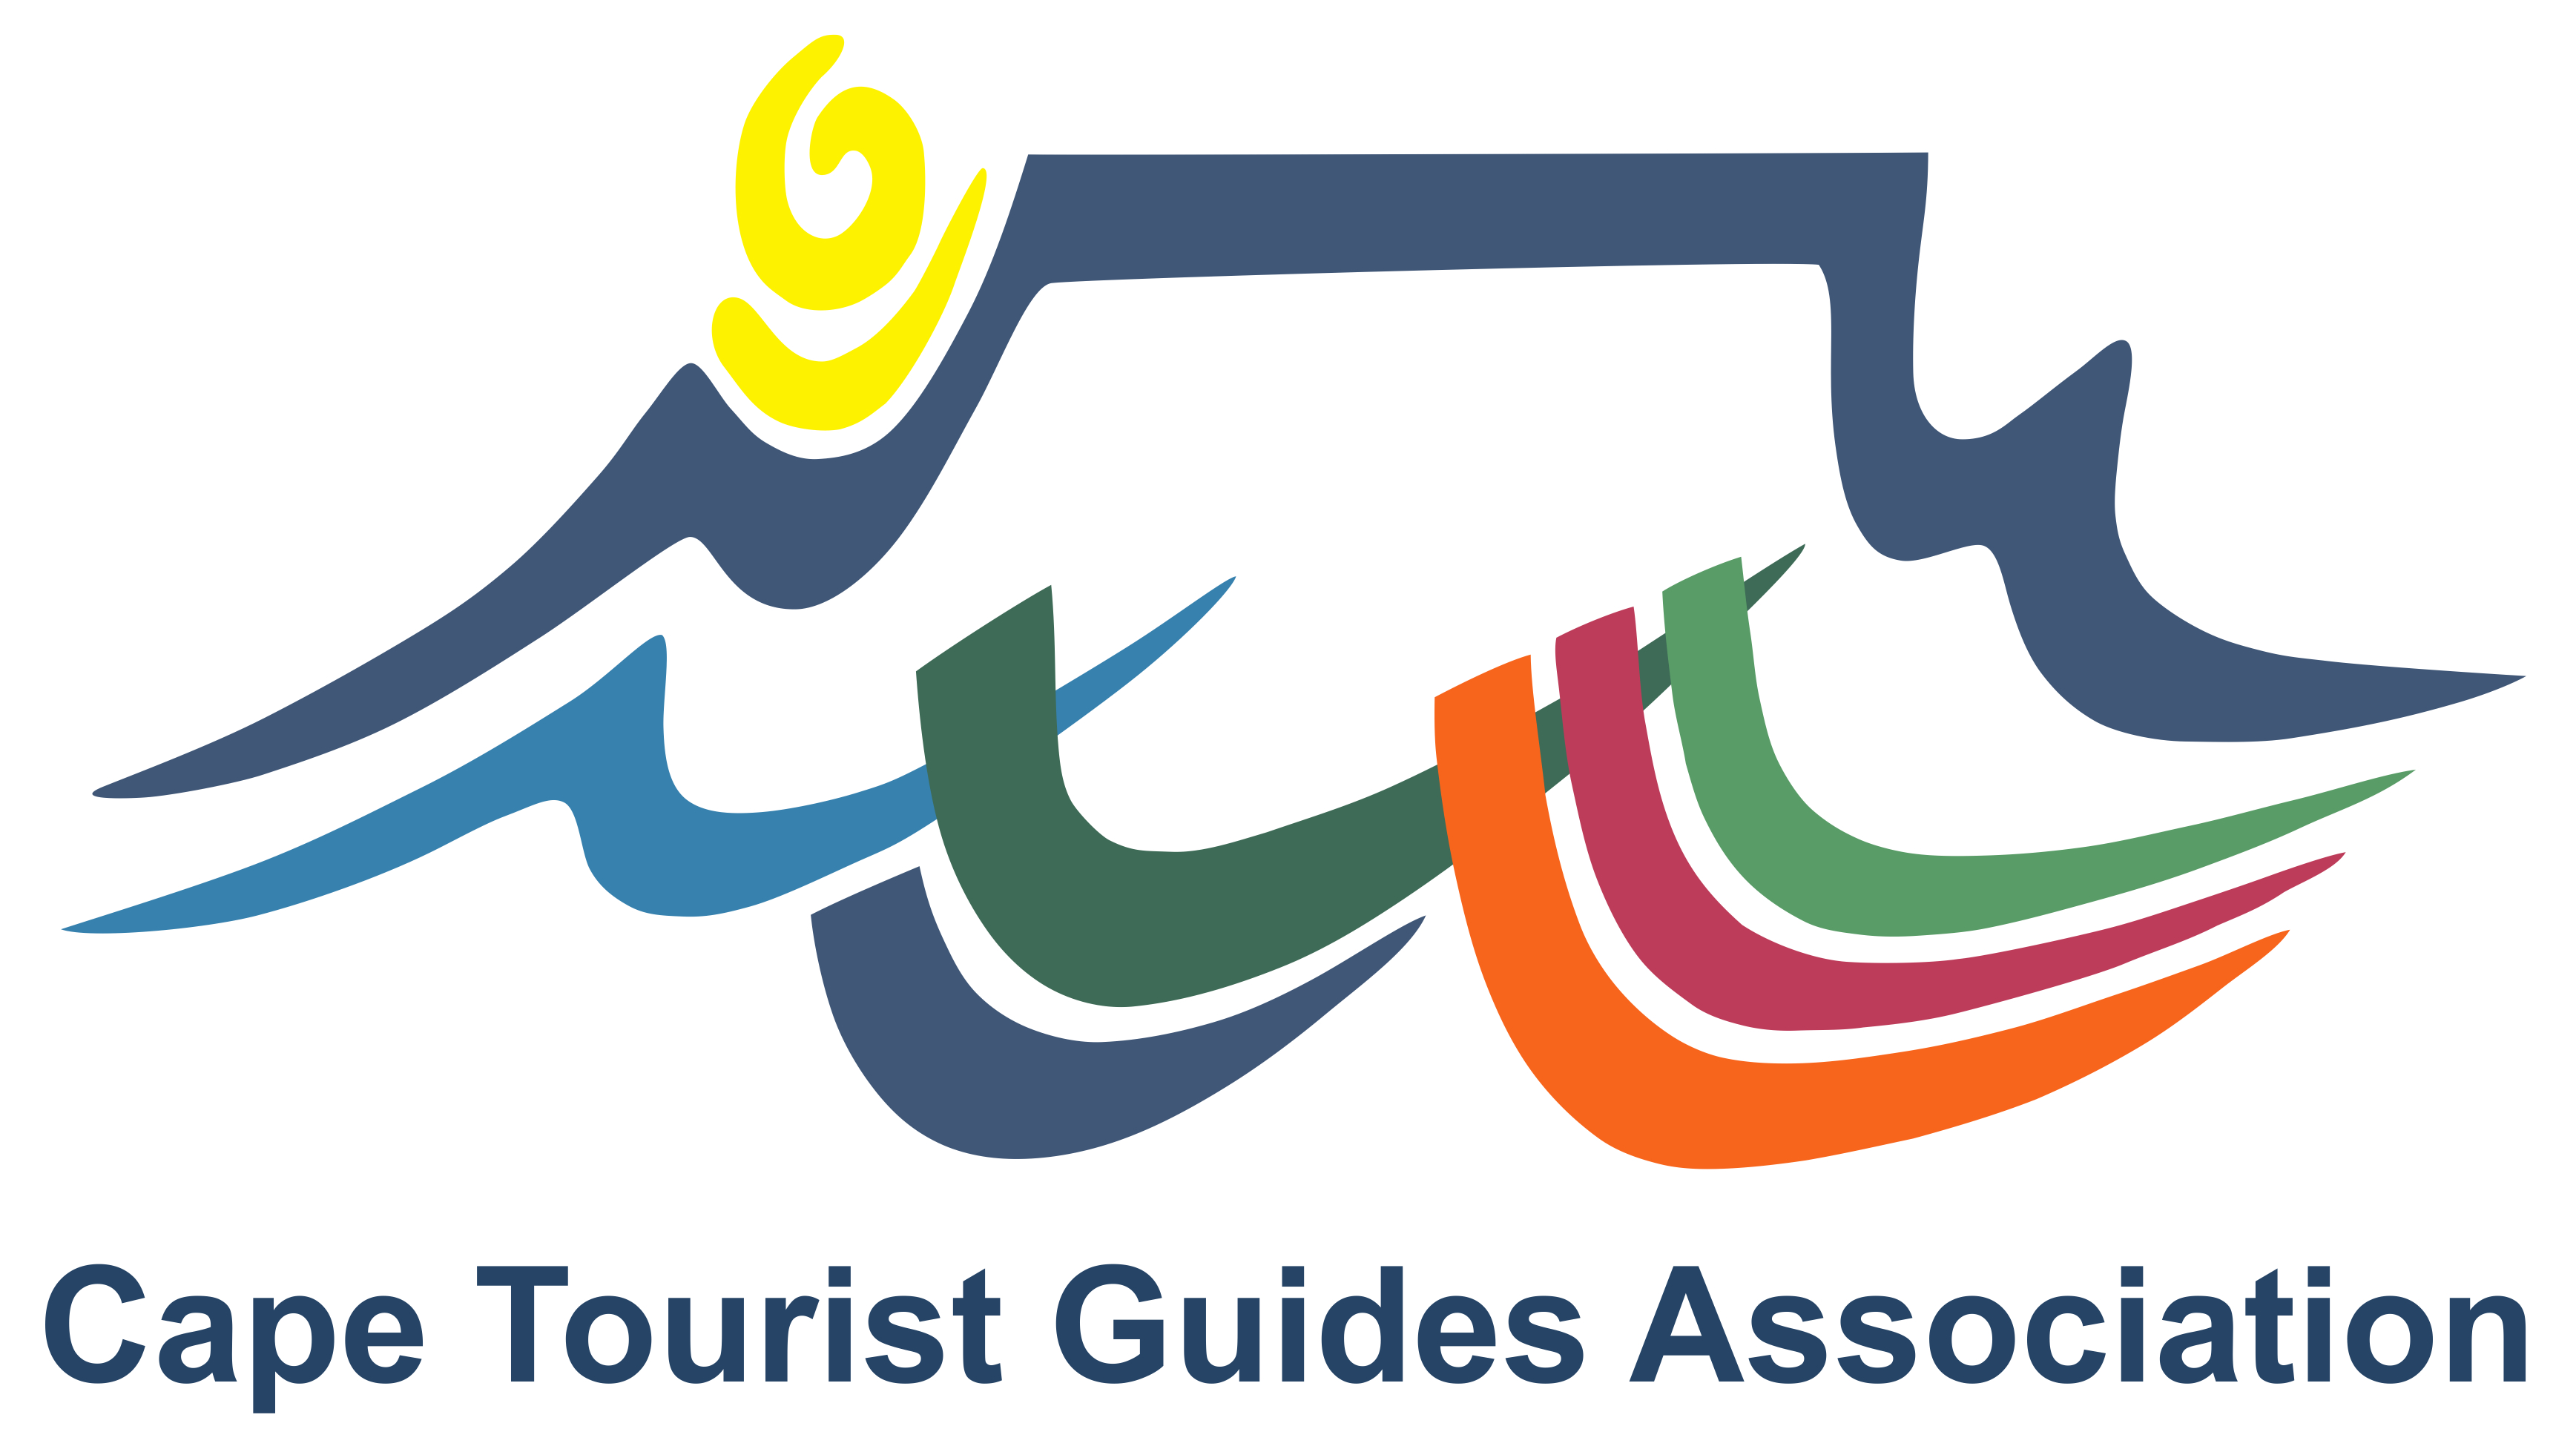 Cape Tourist Guides Association